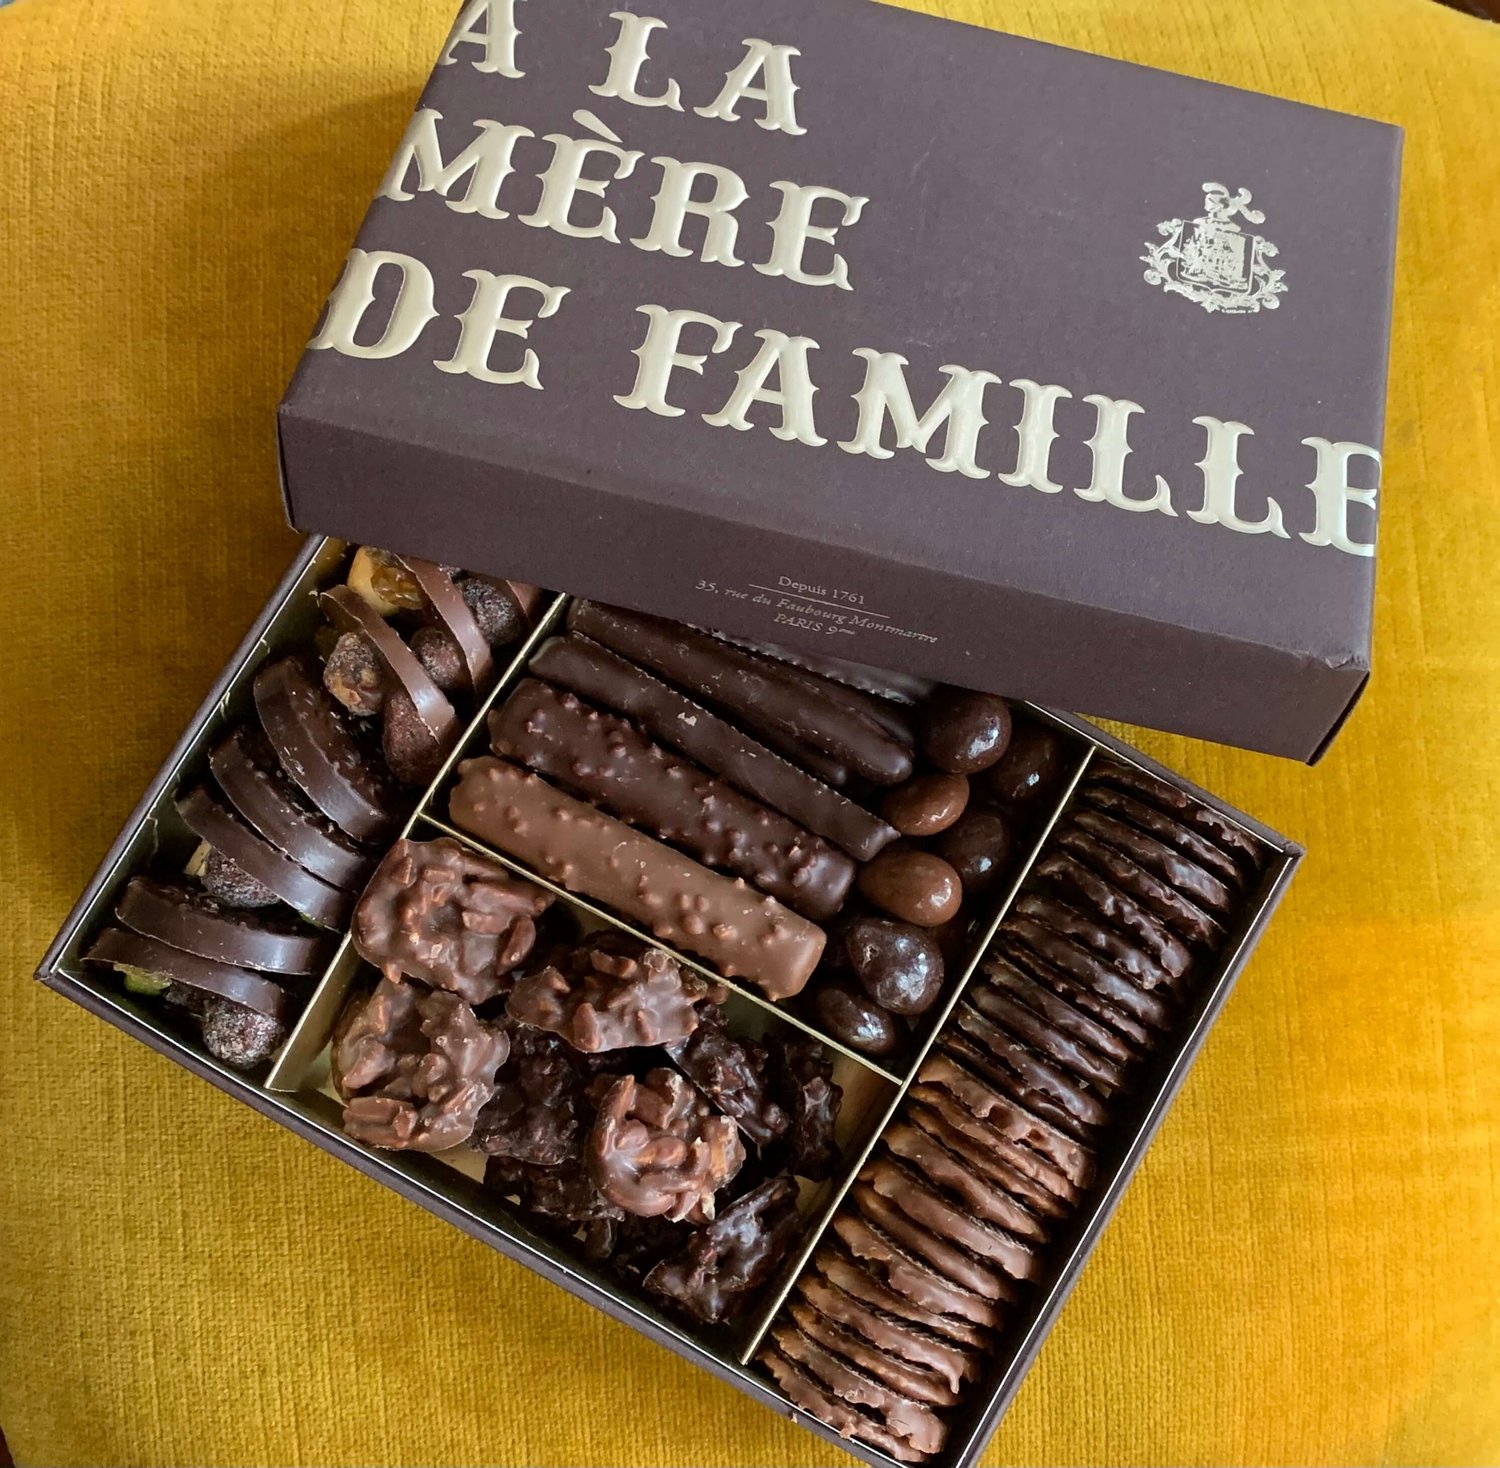 À la Mère de Famille, the Oldest Chocolate Shop in Paris